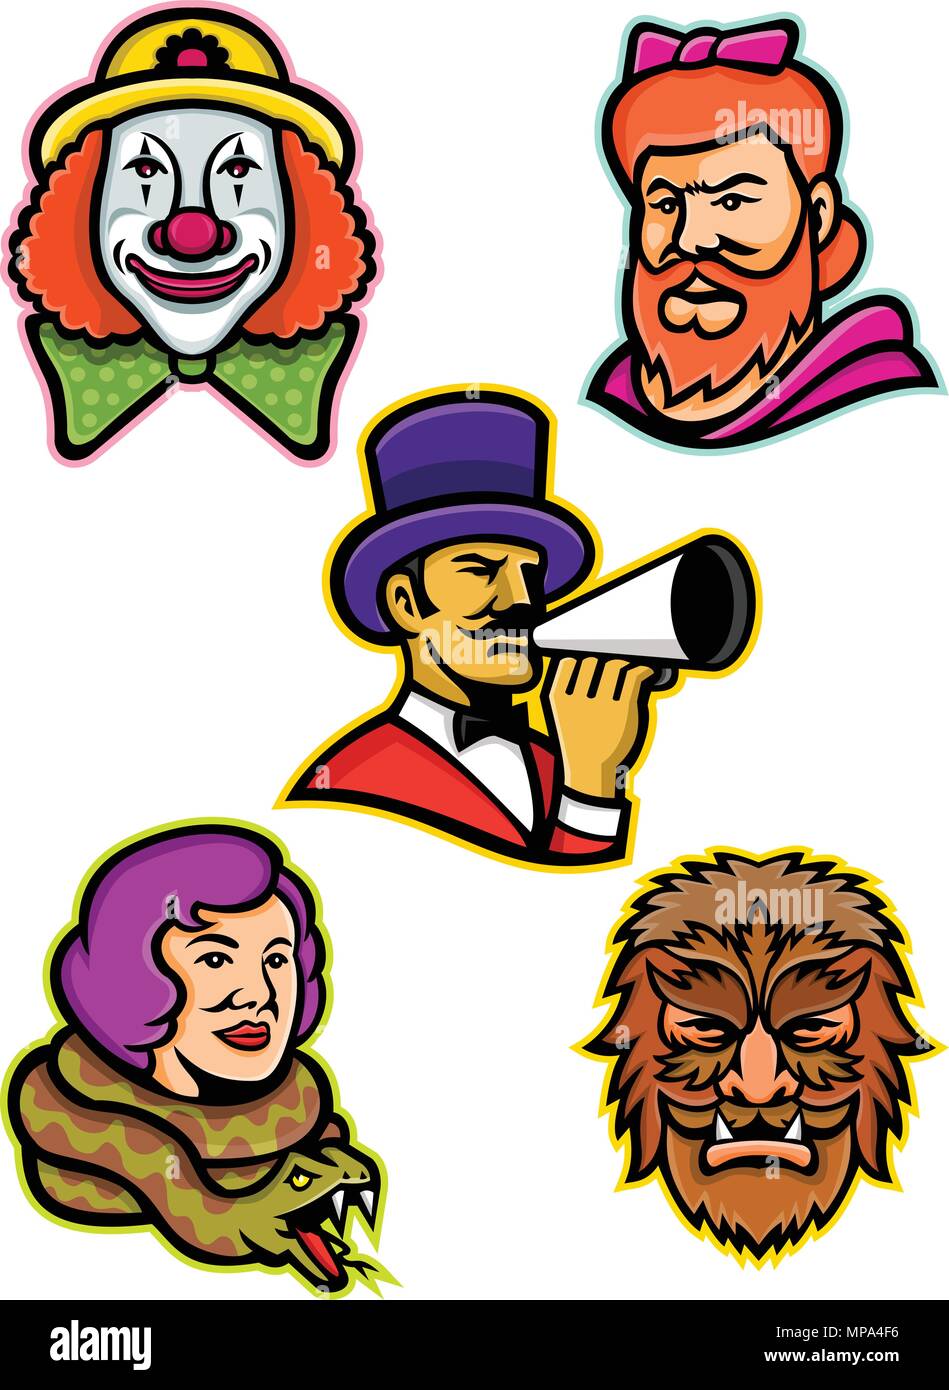 L'icône illustration mascotte ensemble de chefs d'artistes de cirque et de freaks comme la femme à barbe ou la femme, wolfman ou wolfboy, dame de serpent ou charmeur, continue Illustration de Vecteur